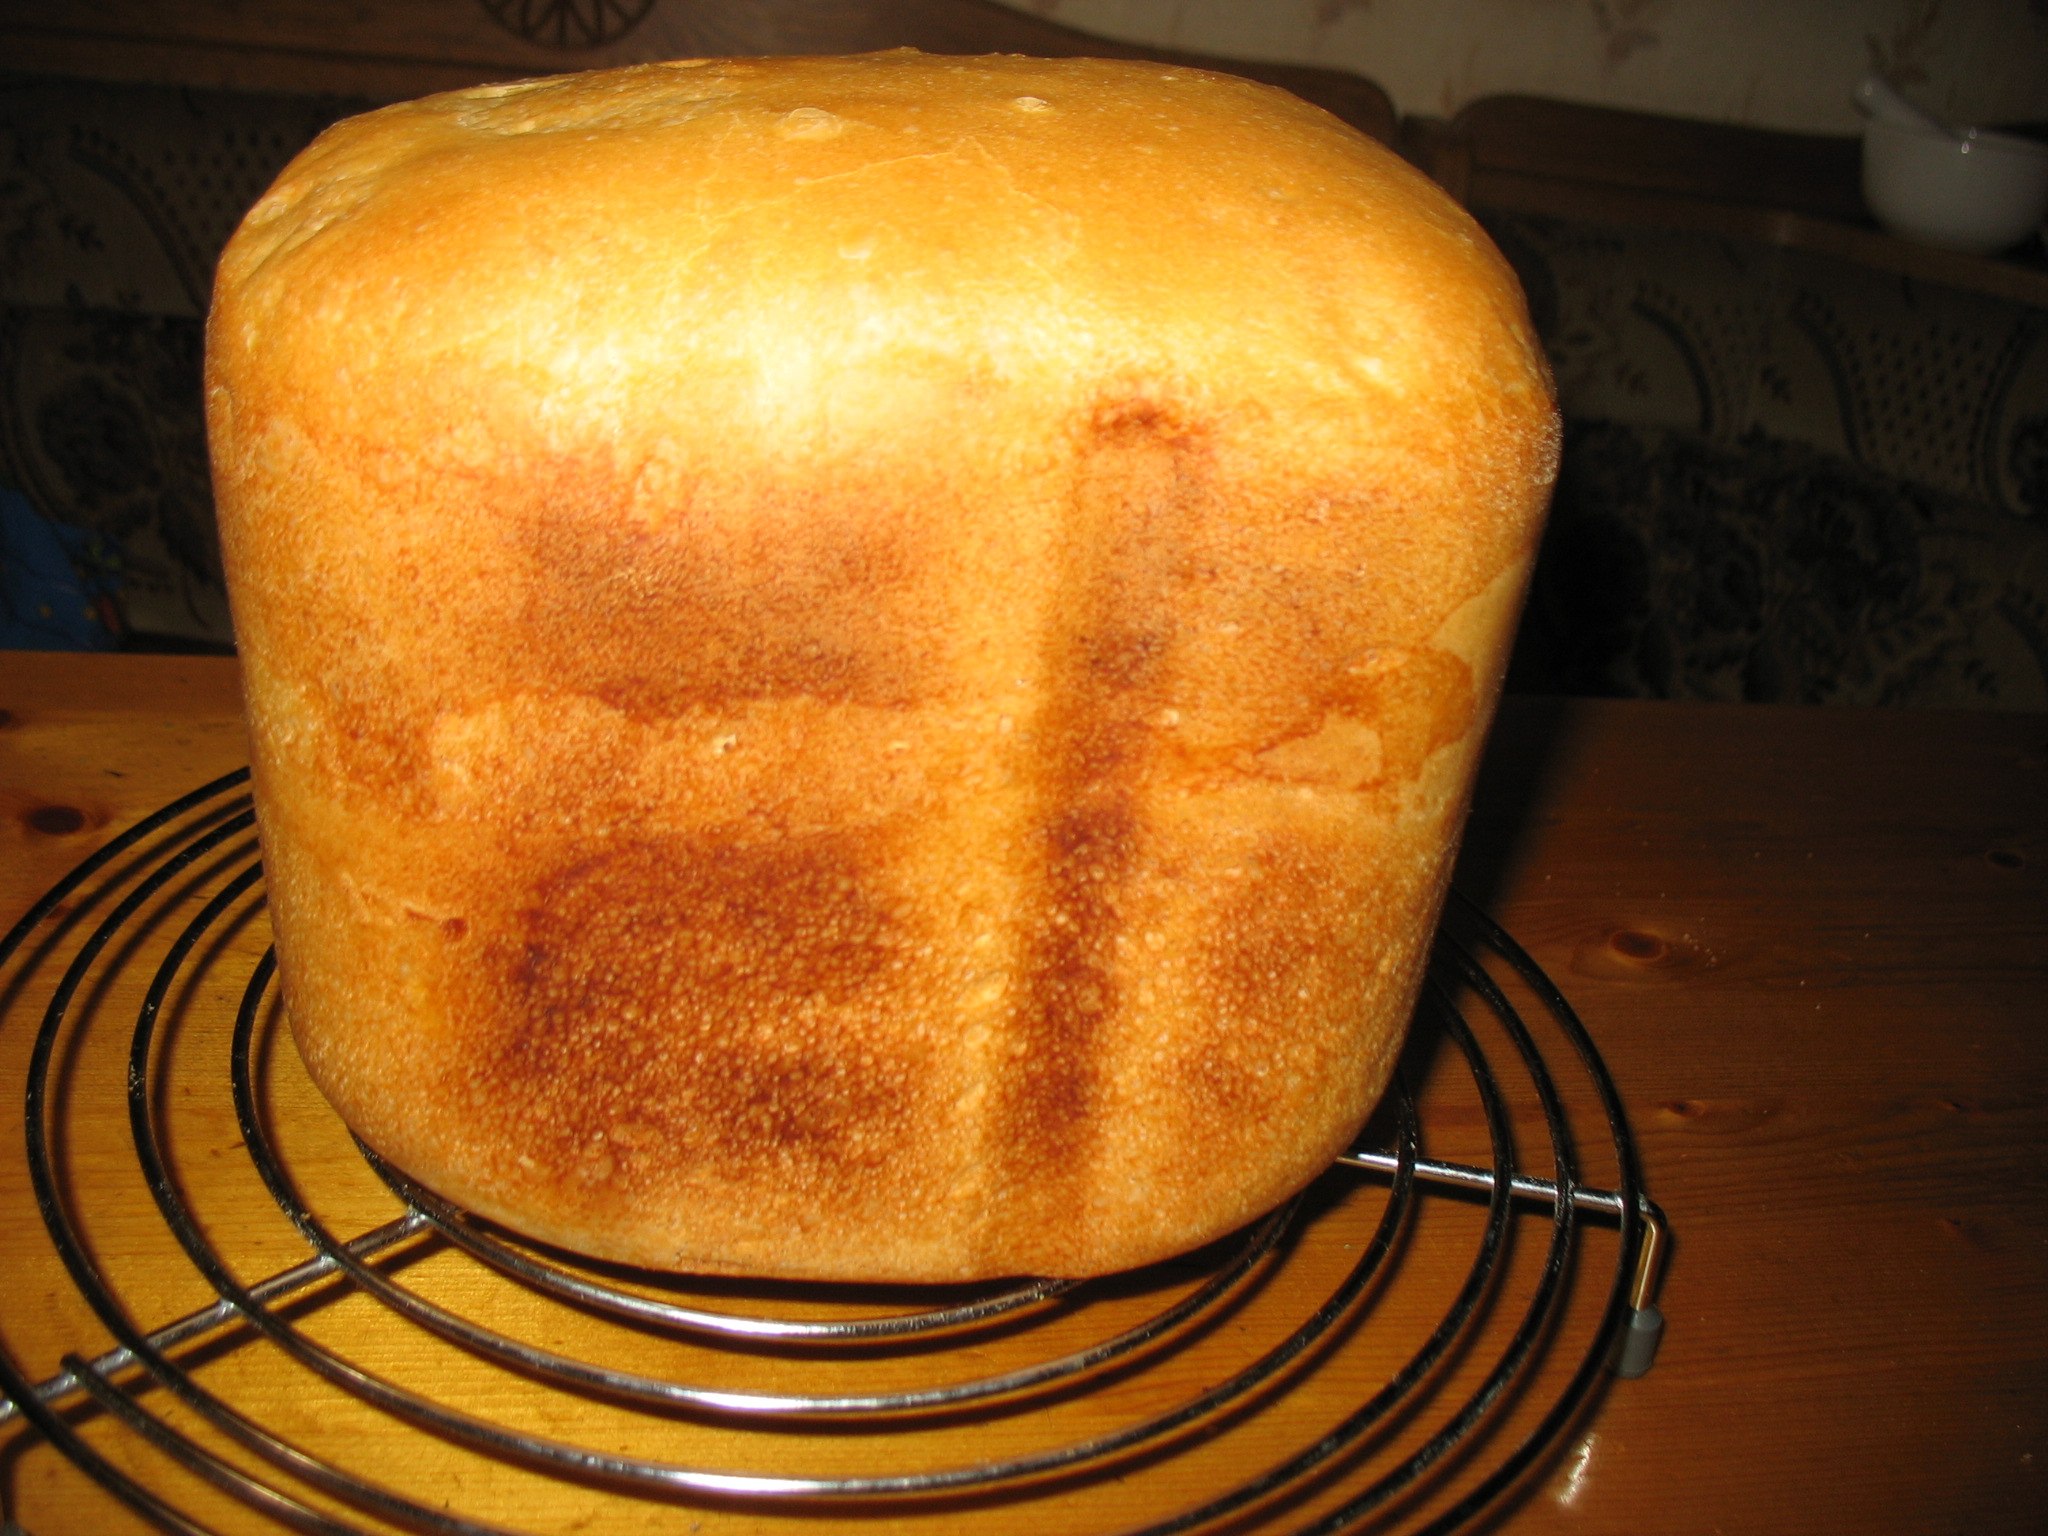 Видео рецепт хлебопечки. Вкусный хлеб в хлебопечке. Французский хлеб в хлебопечке. Хлебопечь французский хлеб. Французская выпечка хлеба в хлебопечке.